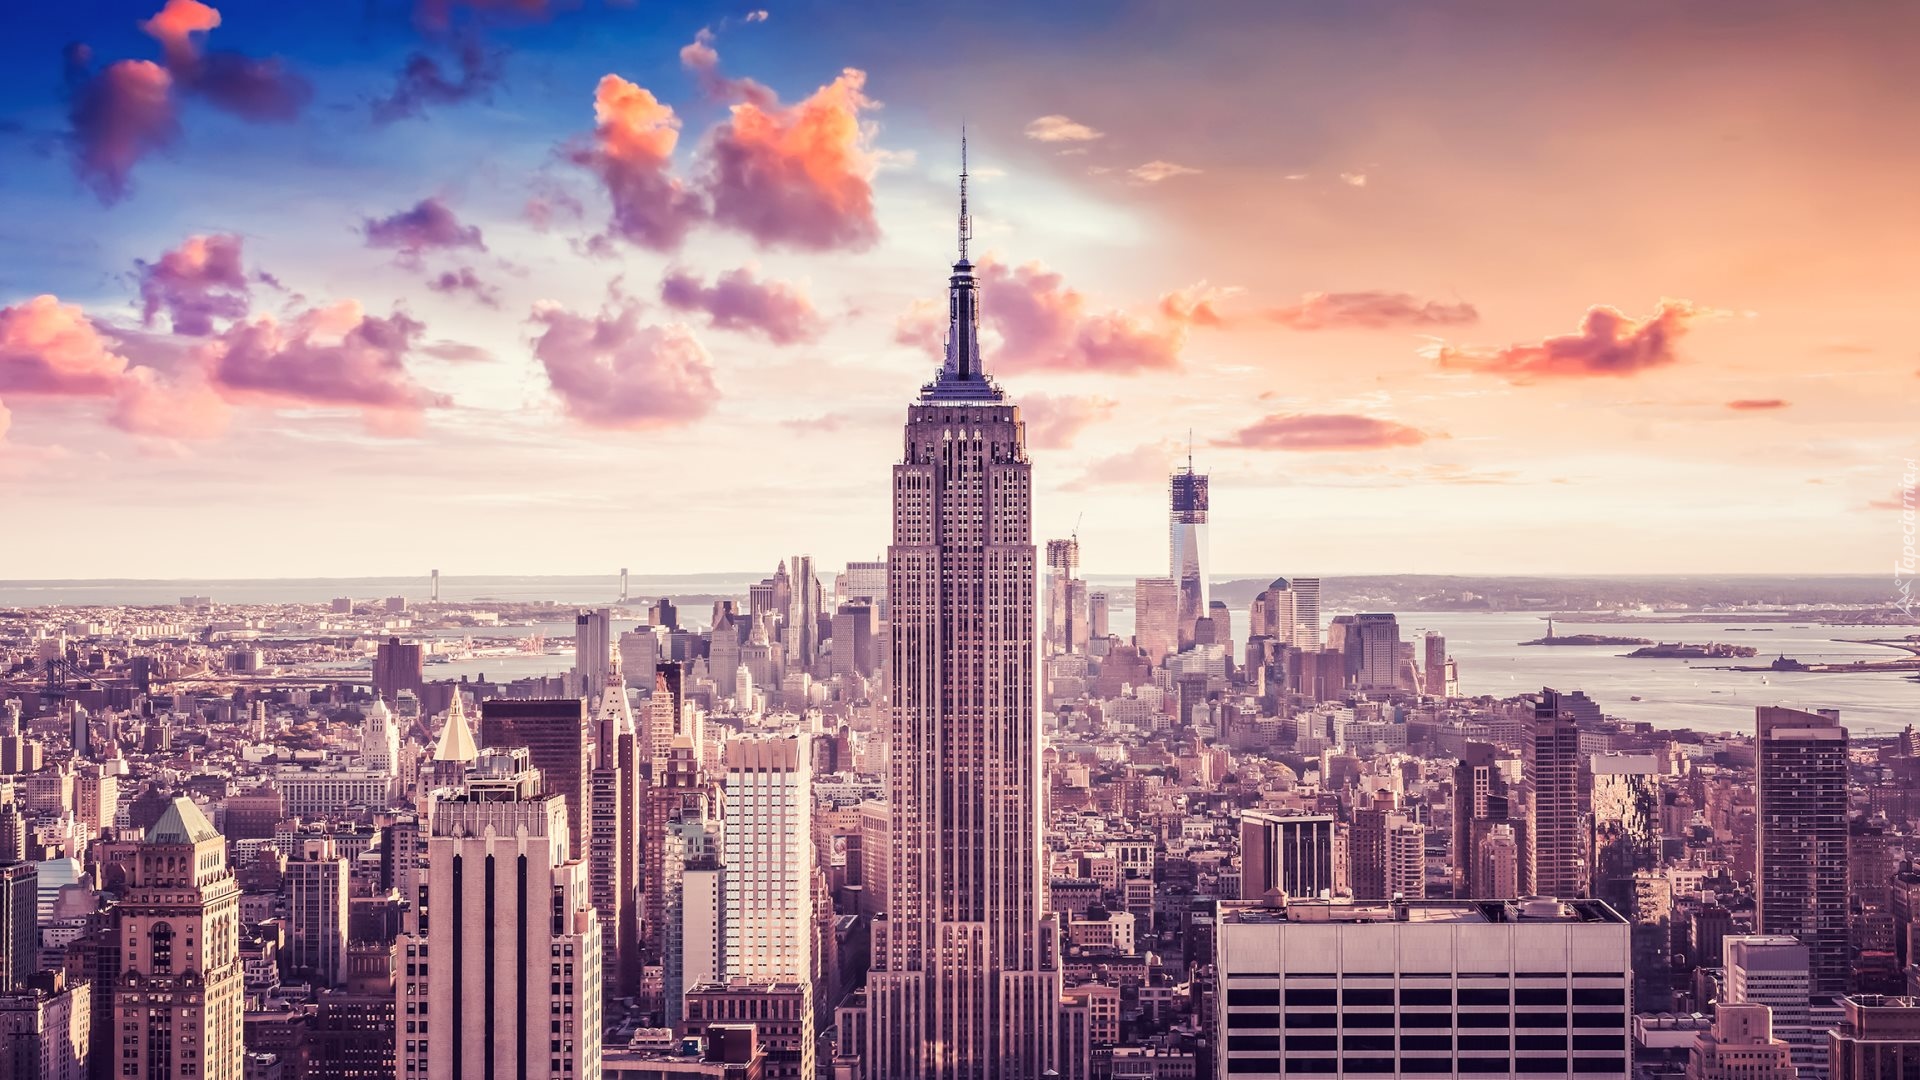 Stany Zjednoczone, Nowy Jork, Wieżowce, Empire State Building